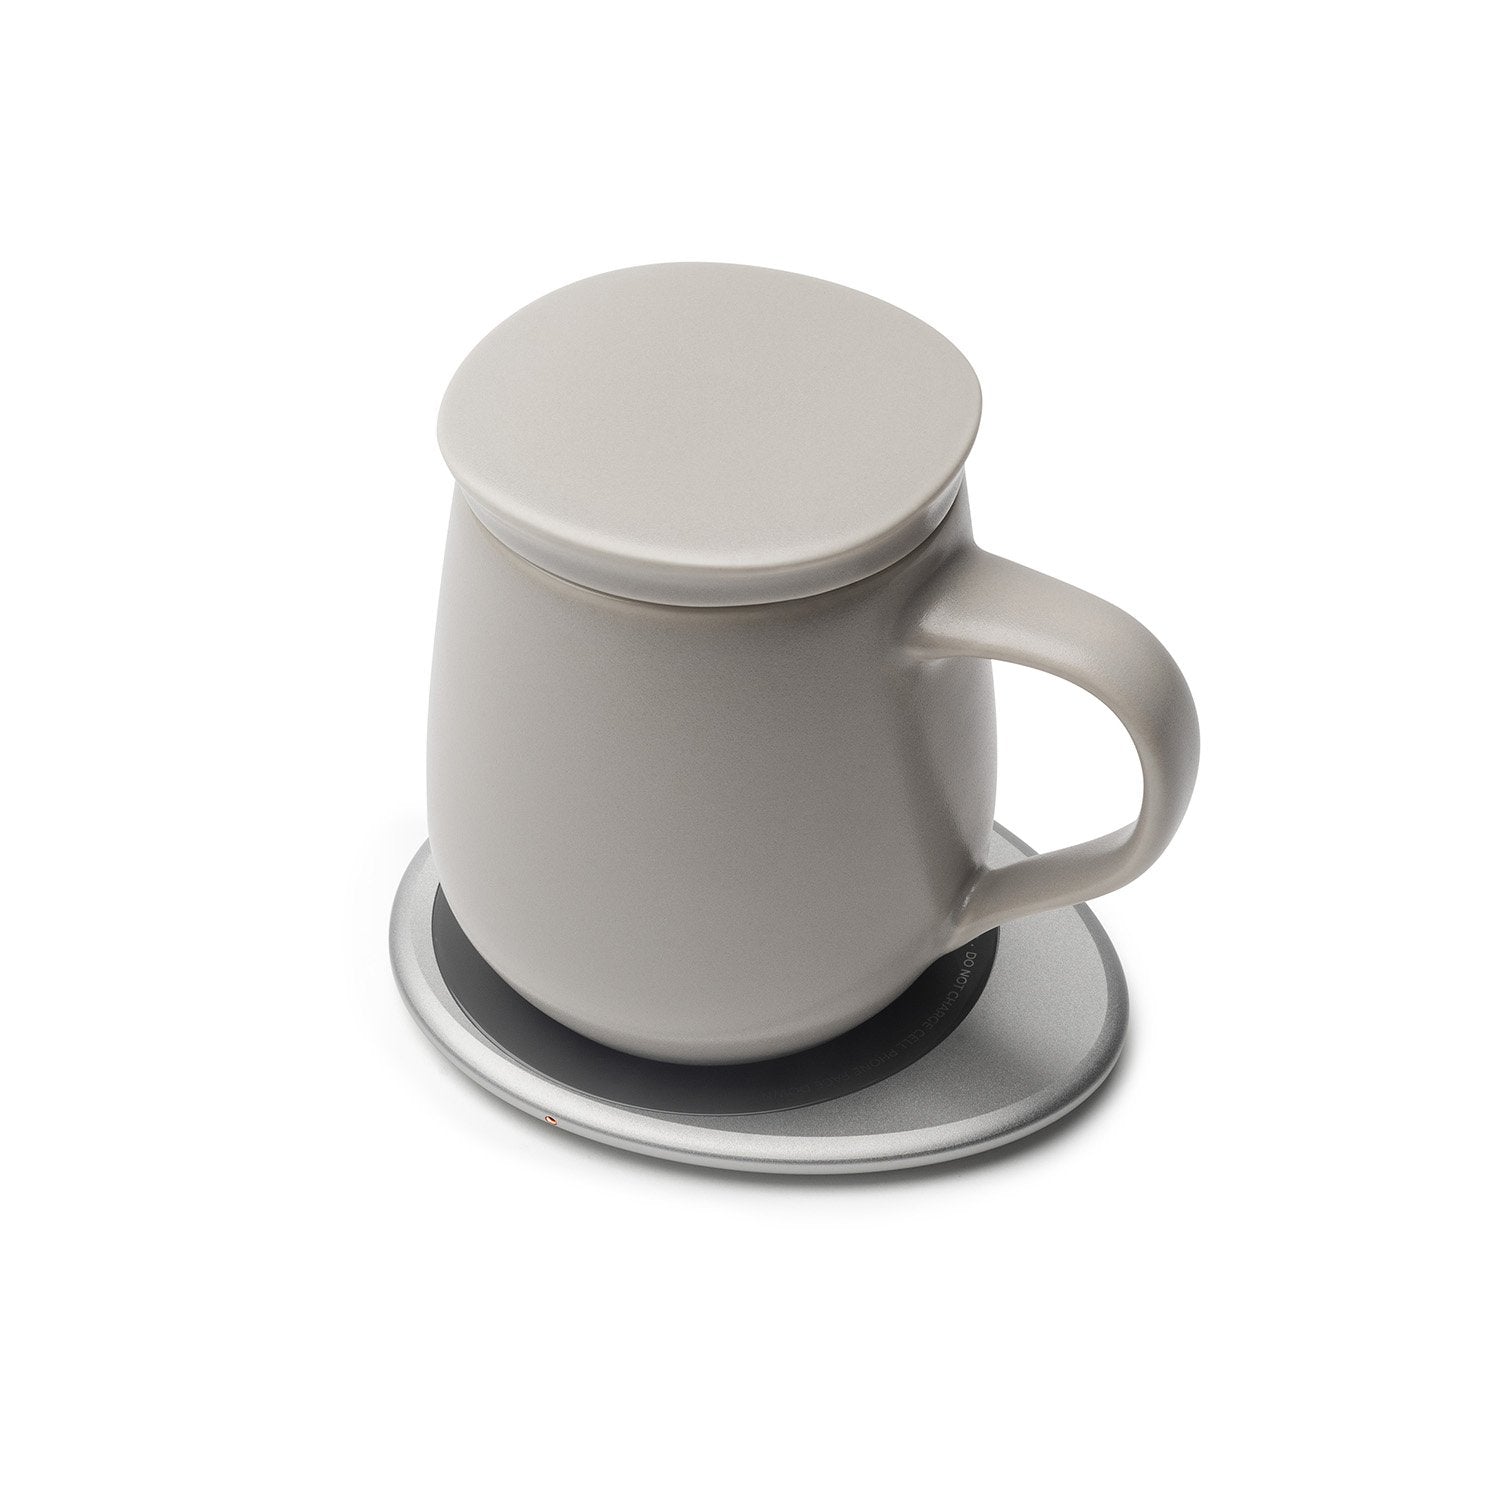 Soft gray mug with lid on heating pad